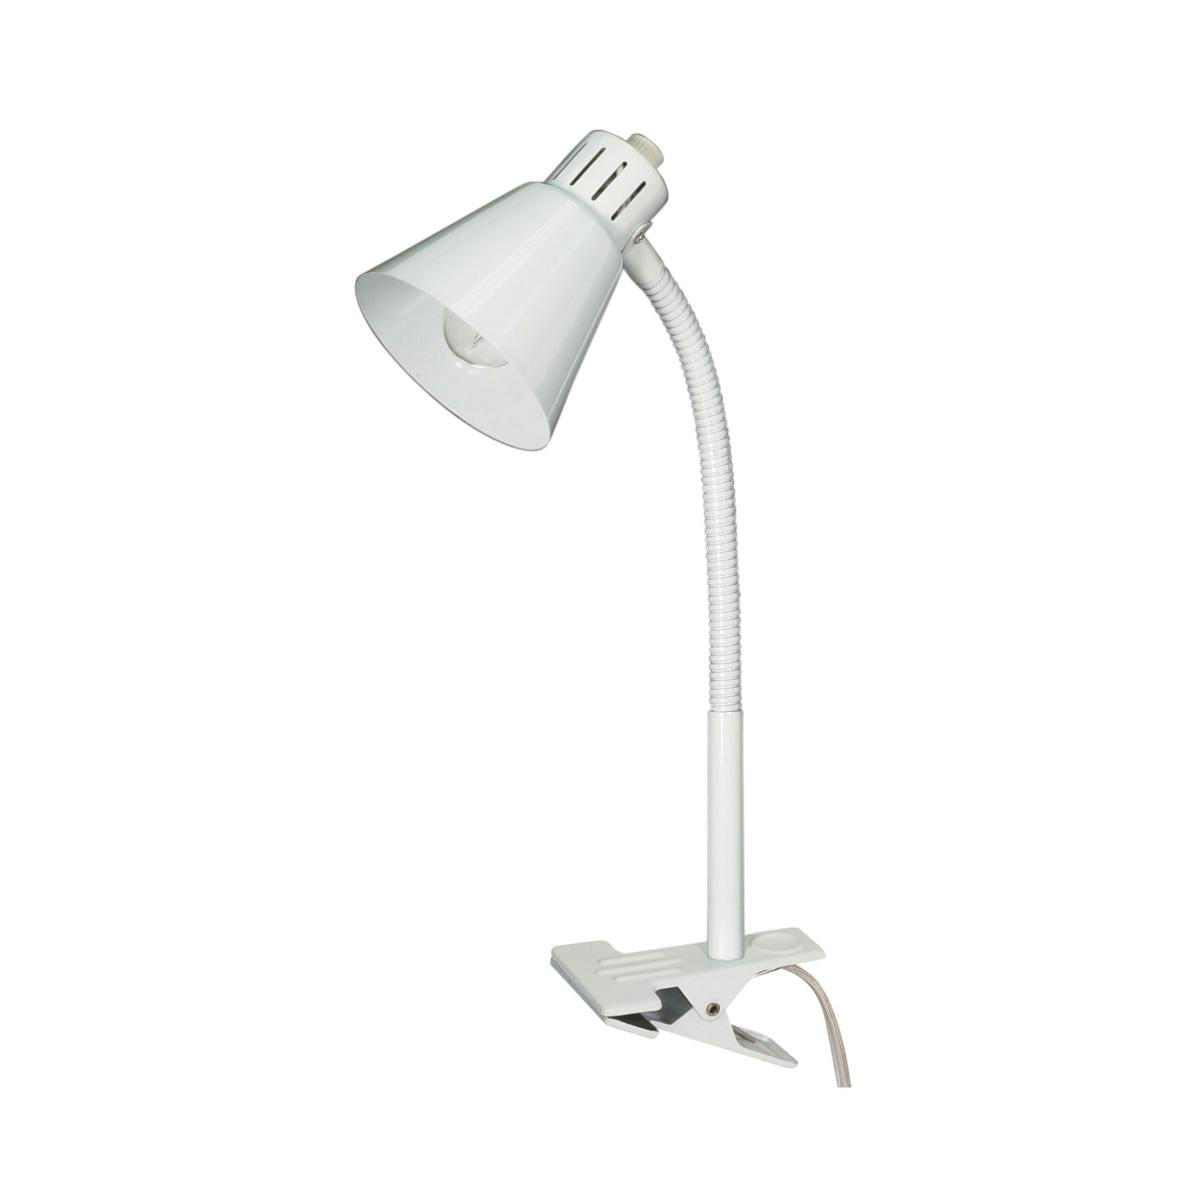 Satco 13"H 1 Light Clip-On Gooseneck White Clamp Desk Lamp